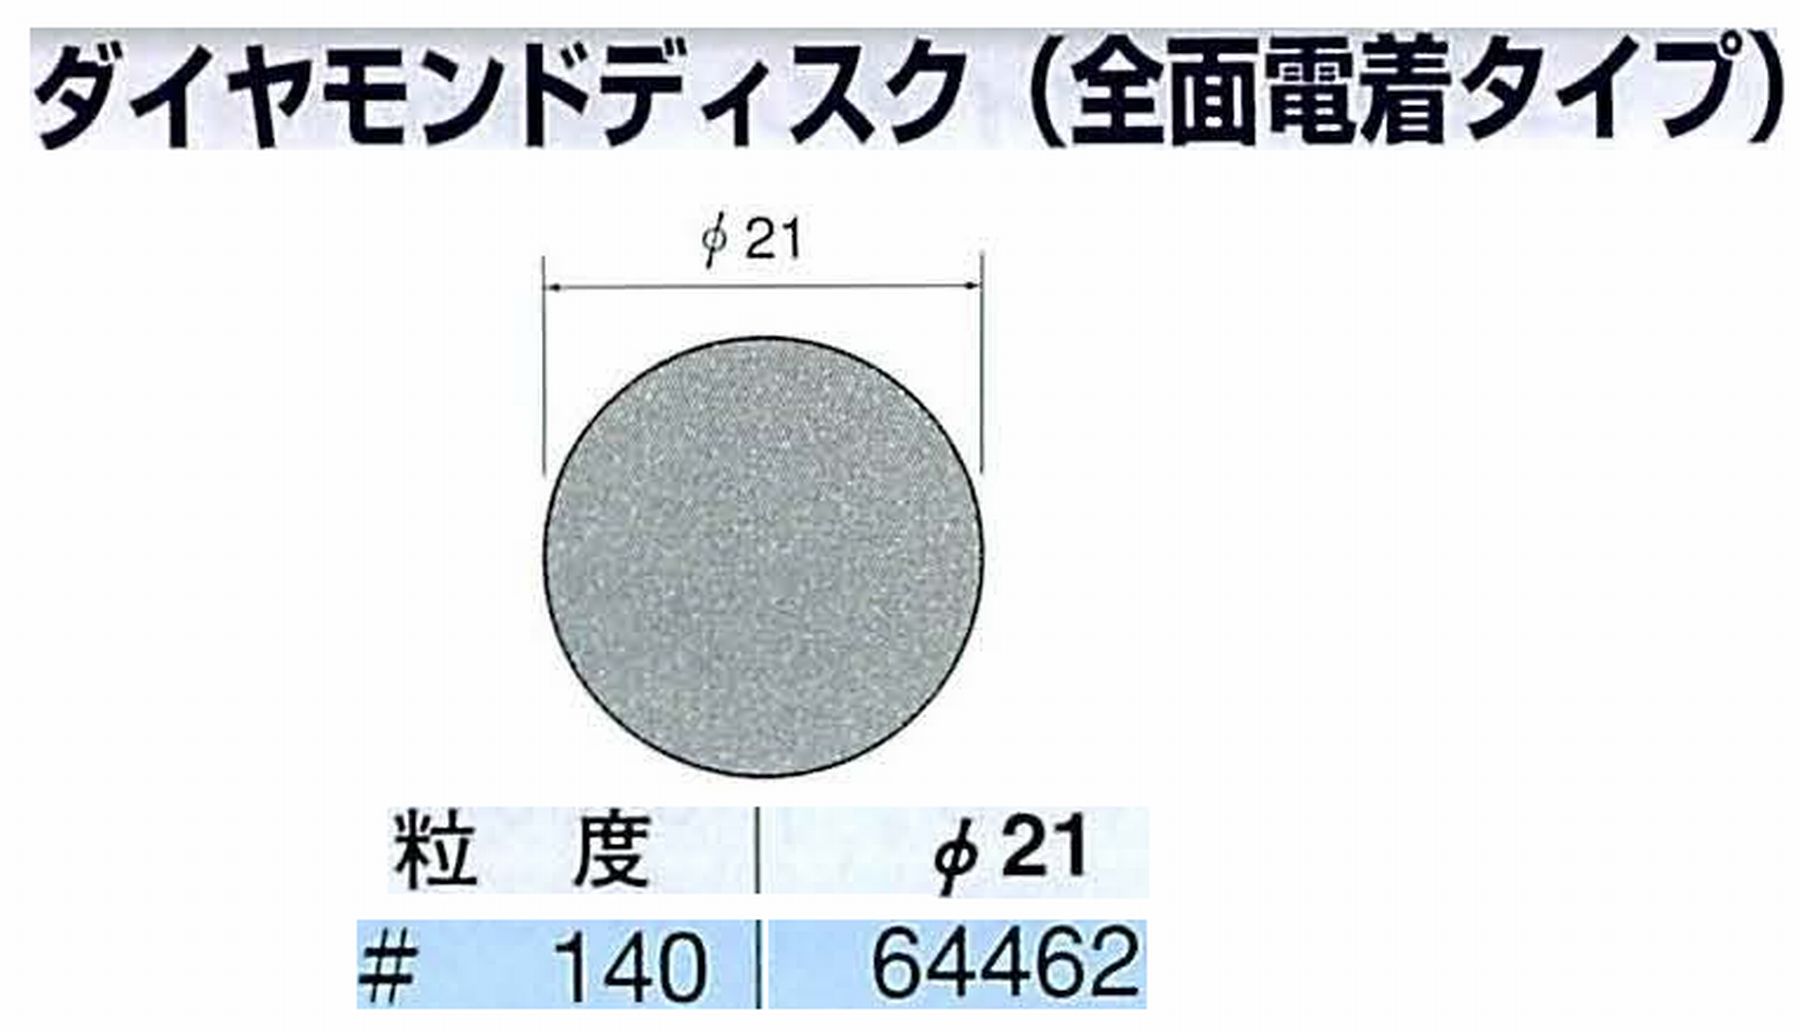 ナカニシ/NAKANISHI アングルグラインダ(電動・エアー) アングルアタッチメント専用工具 ダイヤモンドディスク(全面電着タイプ) 64462